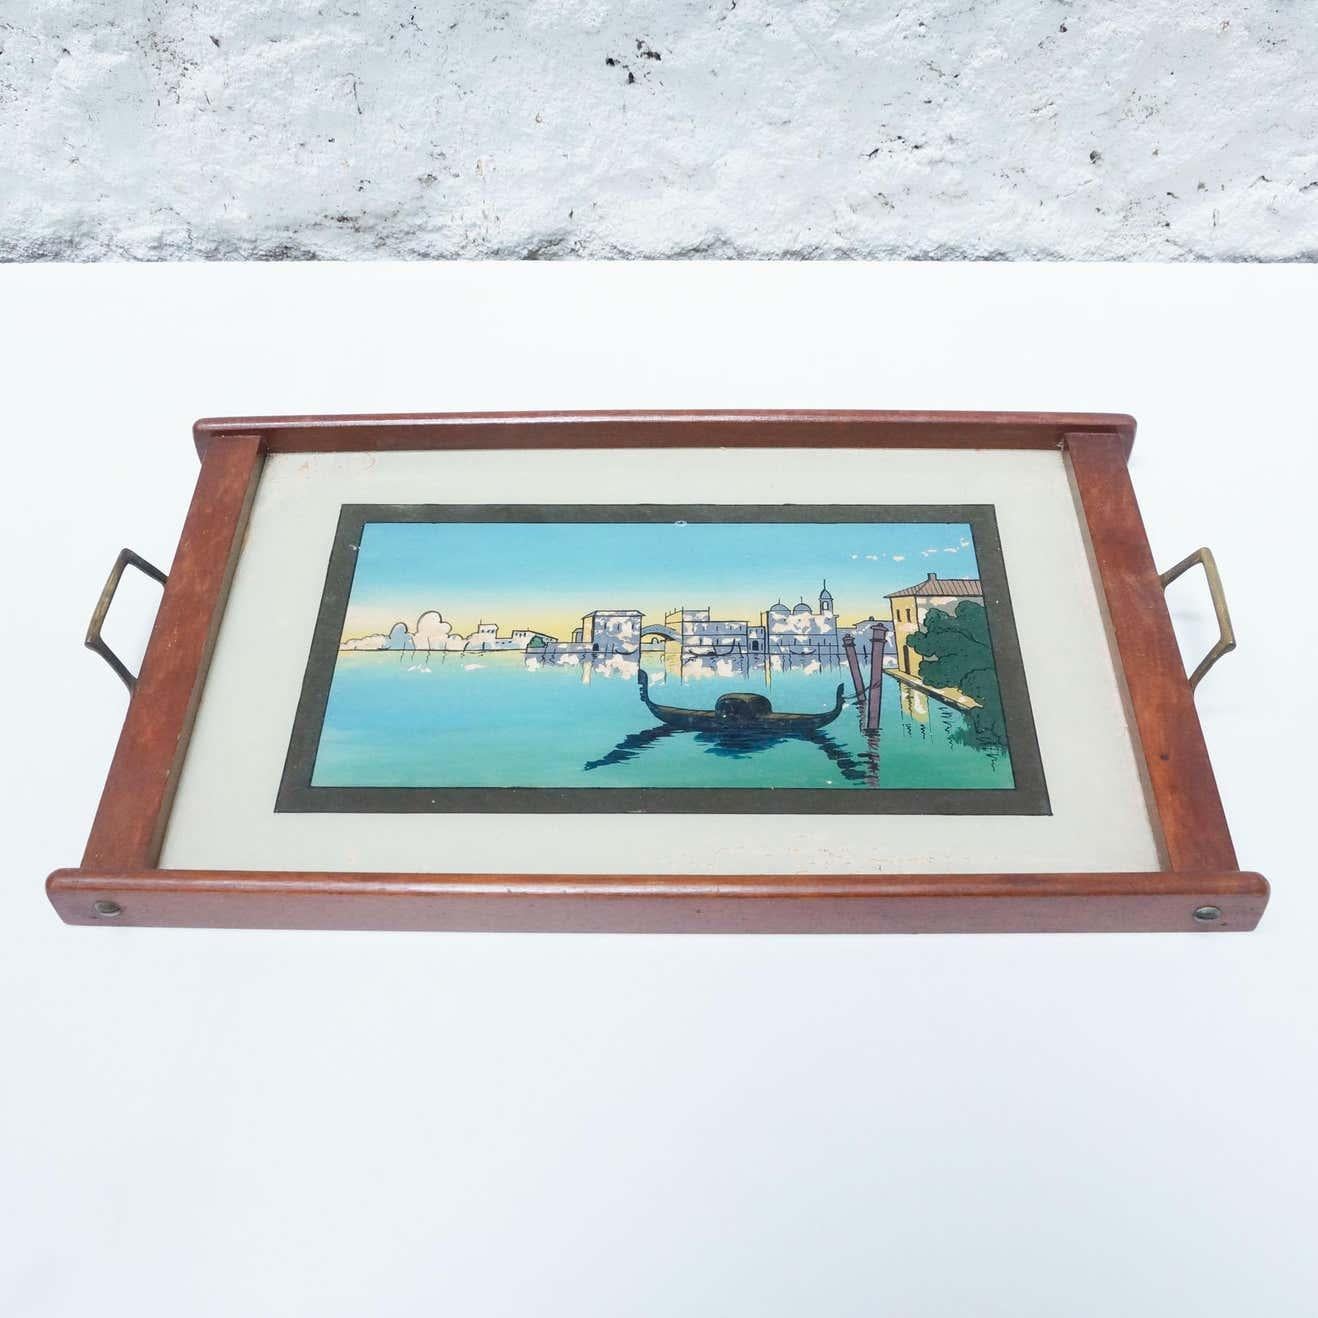 Antikes Tablett aus Glas und Holz mit Venedig-Landschaft, um 1930.
Von einem unbekannten Hersteller aus Europa.

Im Originalzustand, mit einigen sichtbaren Gebrauchs- und Altersspuren, die eine schöne Patina erhalten